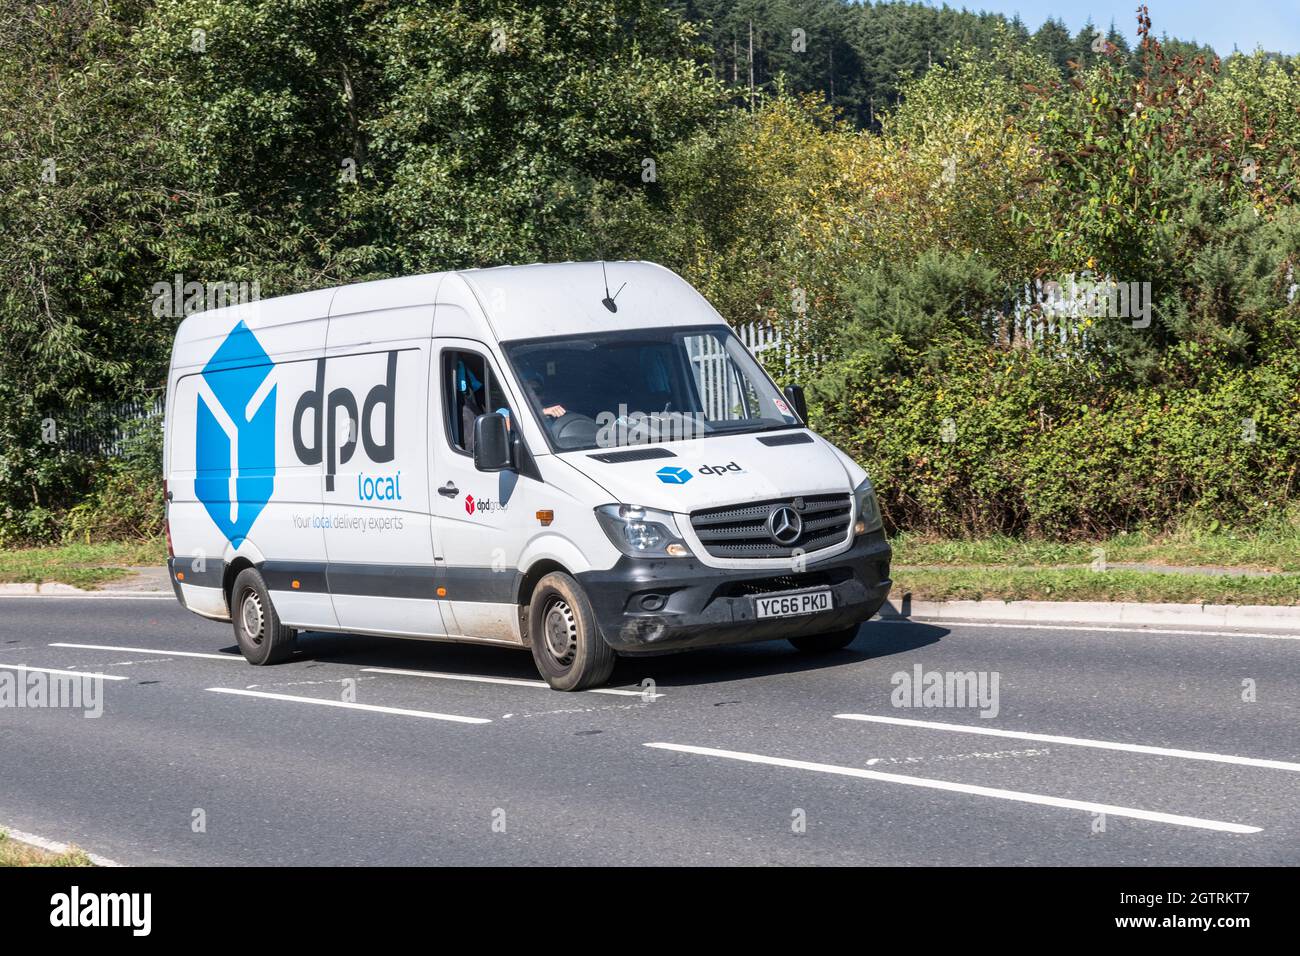 Weißer DPD lokaler Lieferwagen (Mercedes) fährt auf der Landstraße hinauf. Für UK Fahrer Mangel, Paketlieferungen während Covid, UK Transport Stockfoto